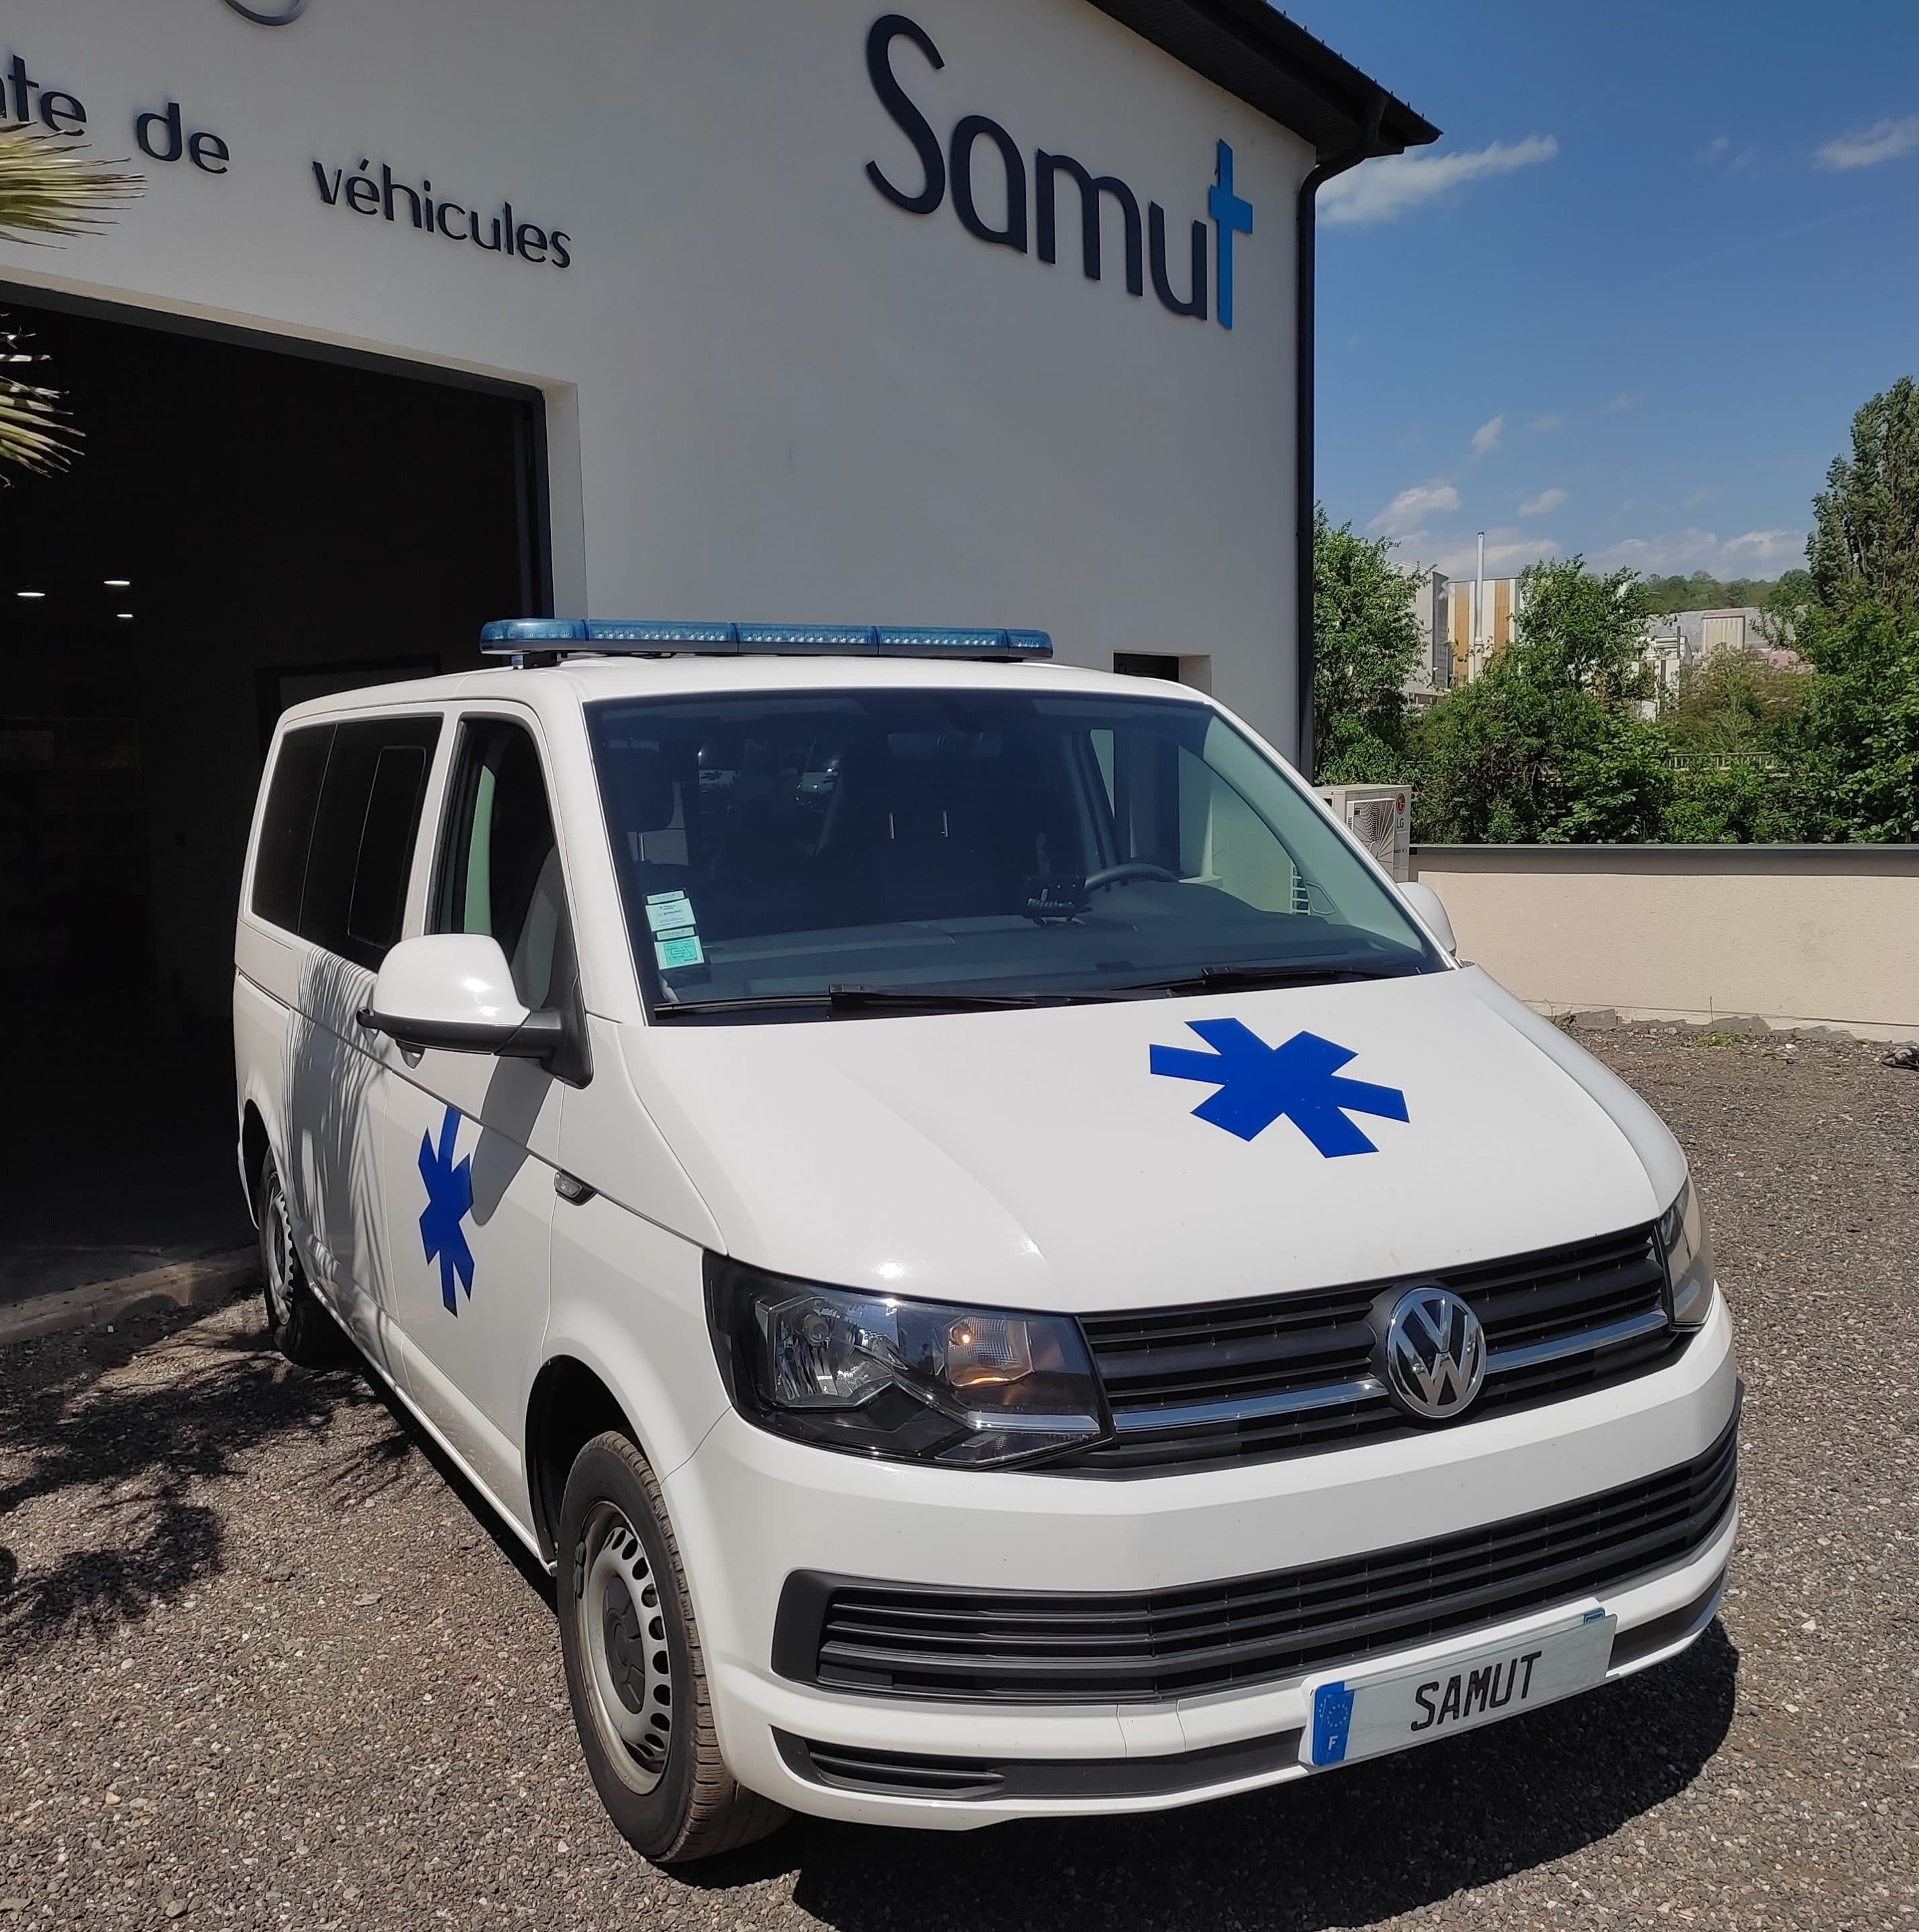 Samut Volkswagen-T6-1-scaled Achetez une ambulance d'occasion  